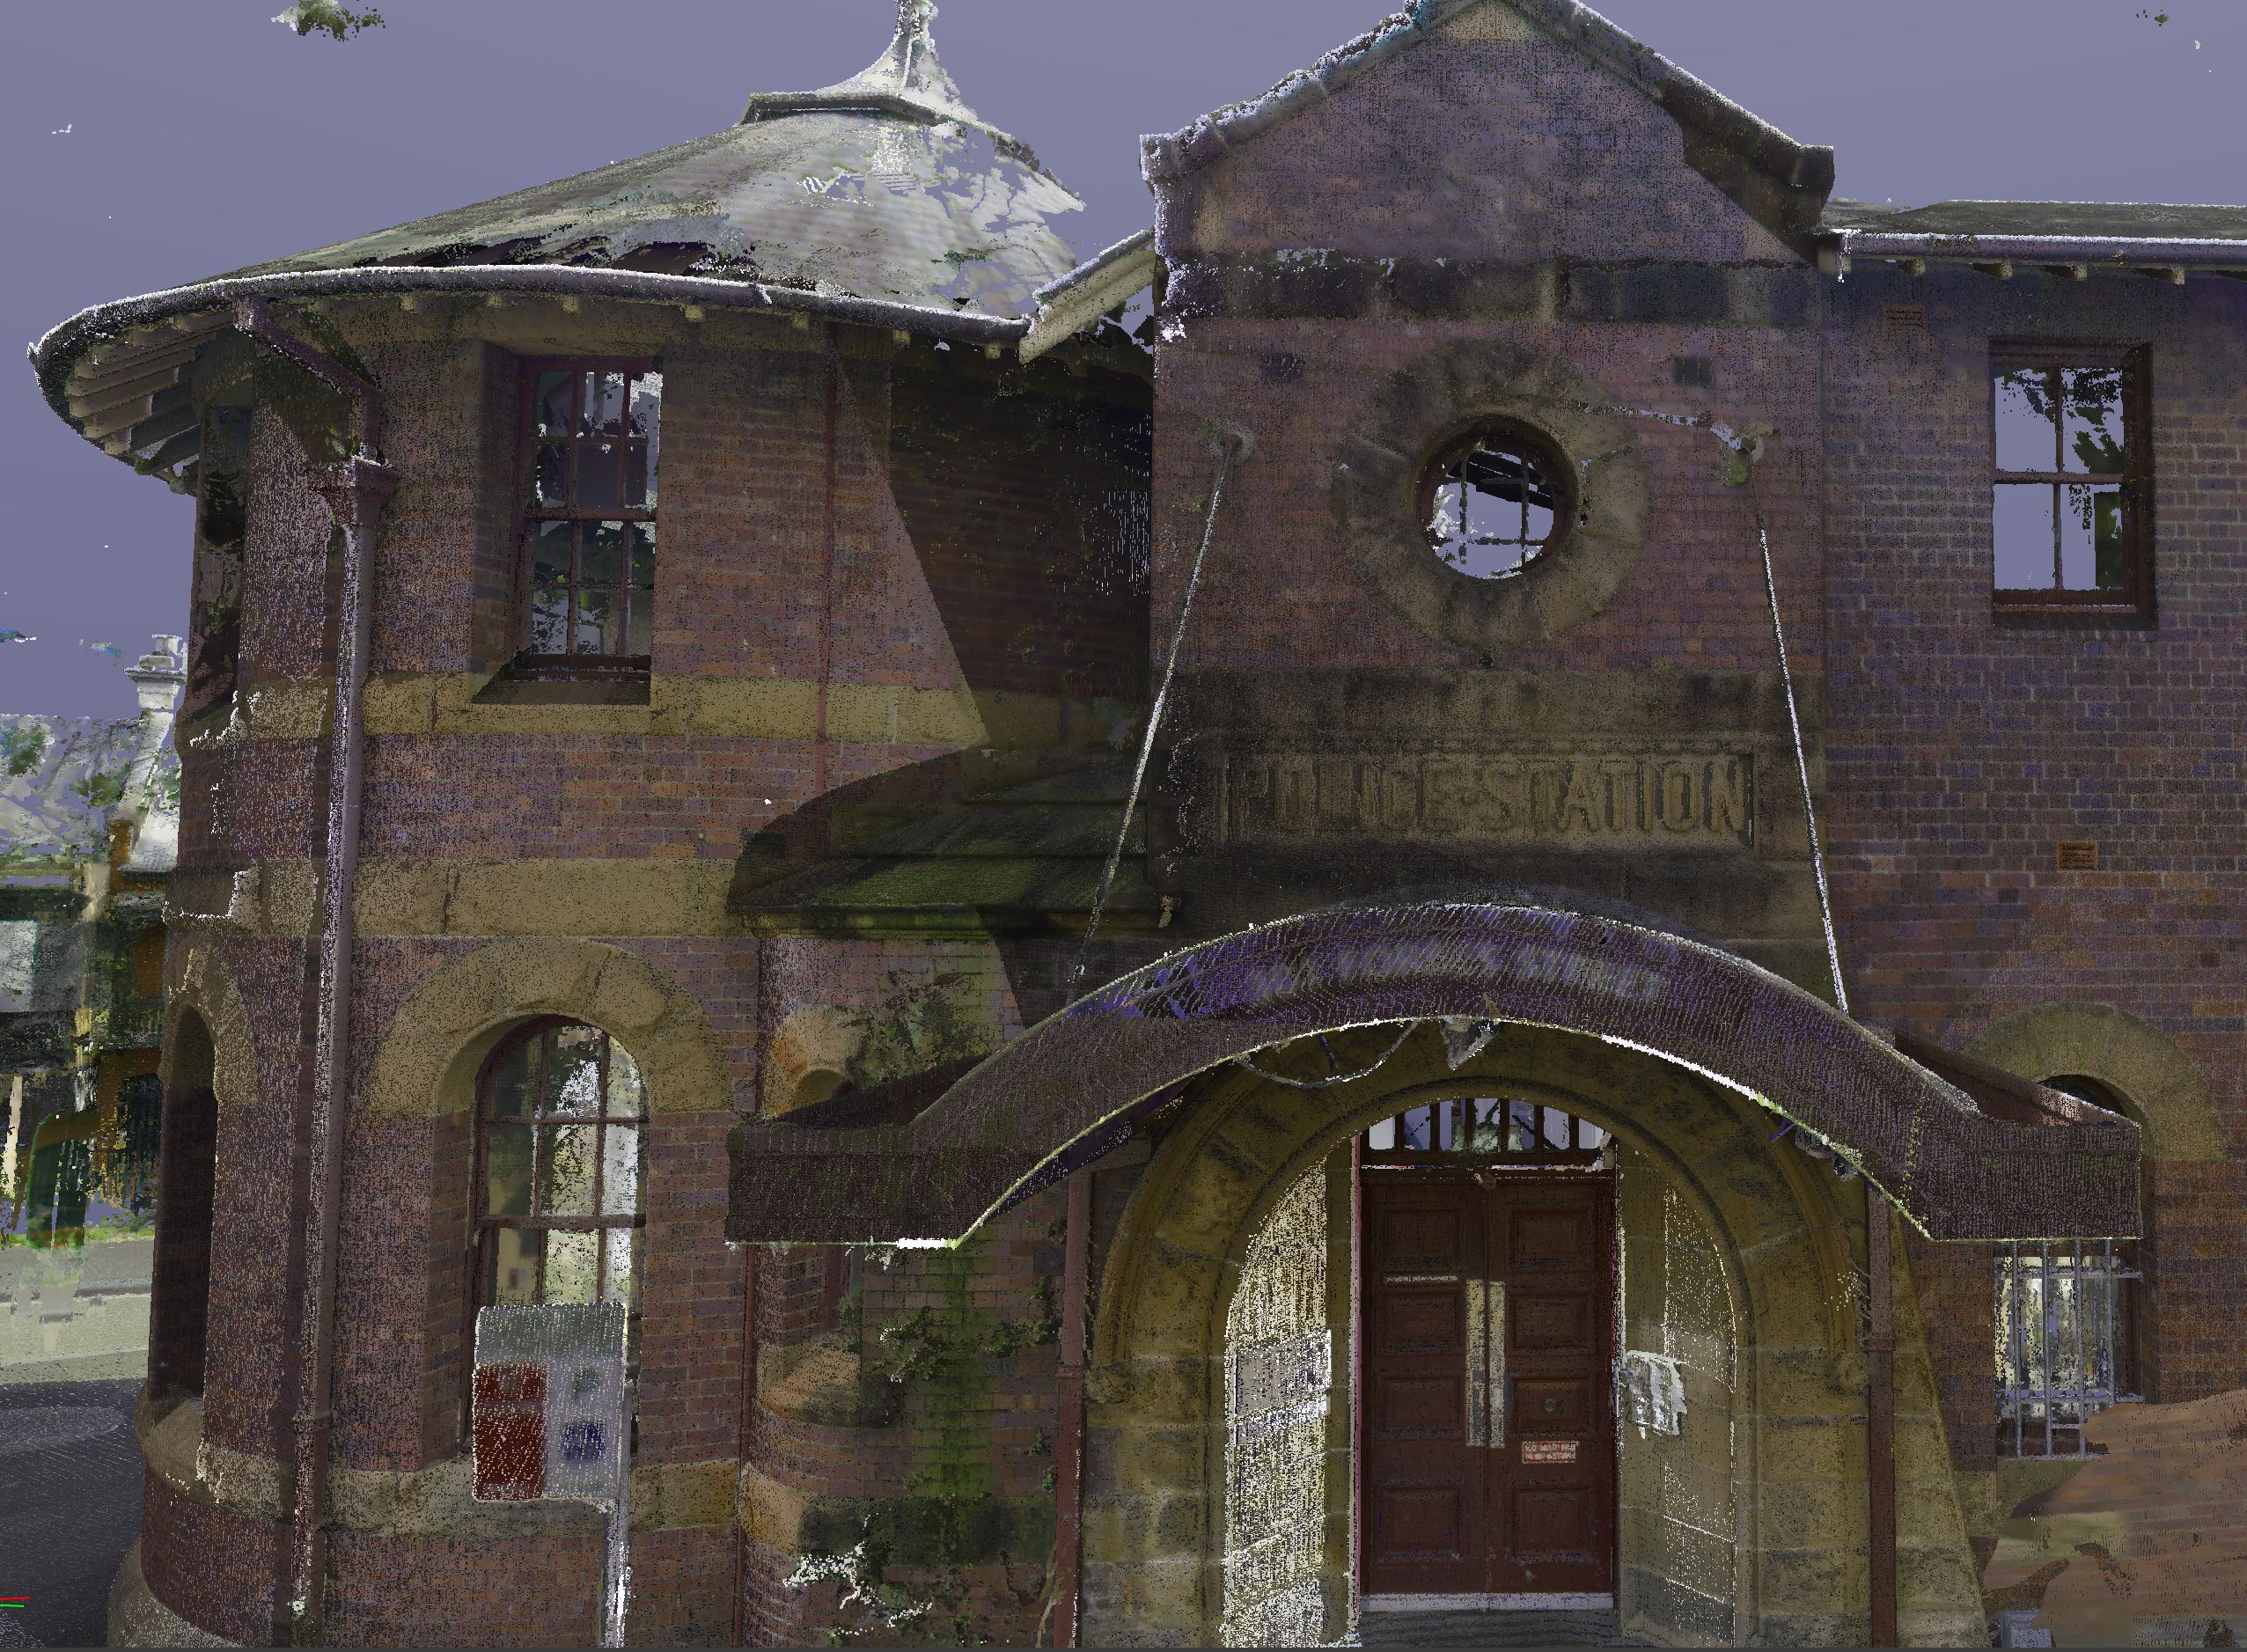 Darlinghurst Police Station - 3D spatial data capture perspective image of building